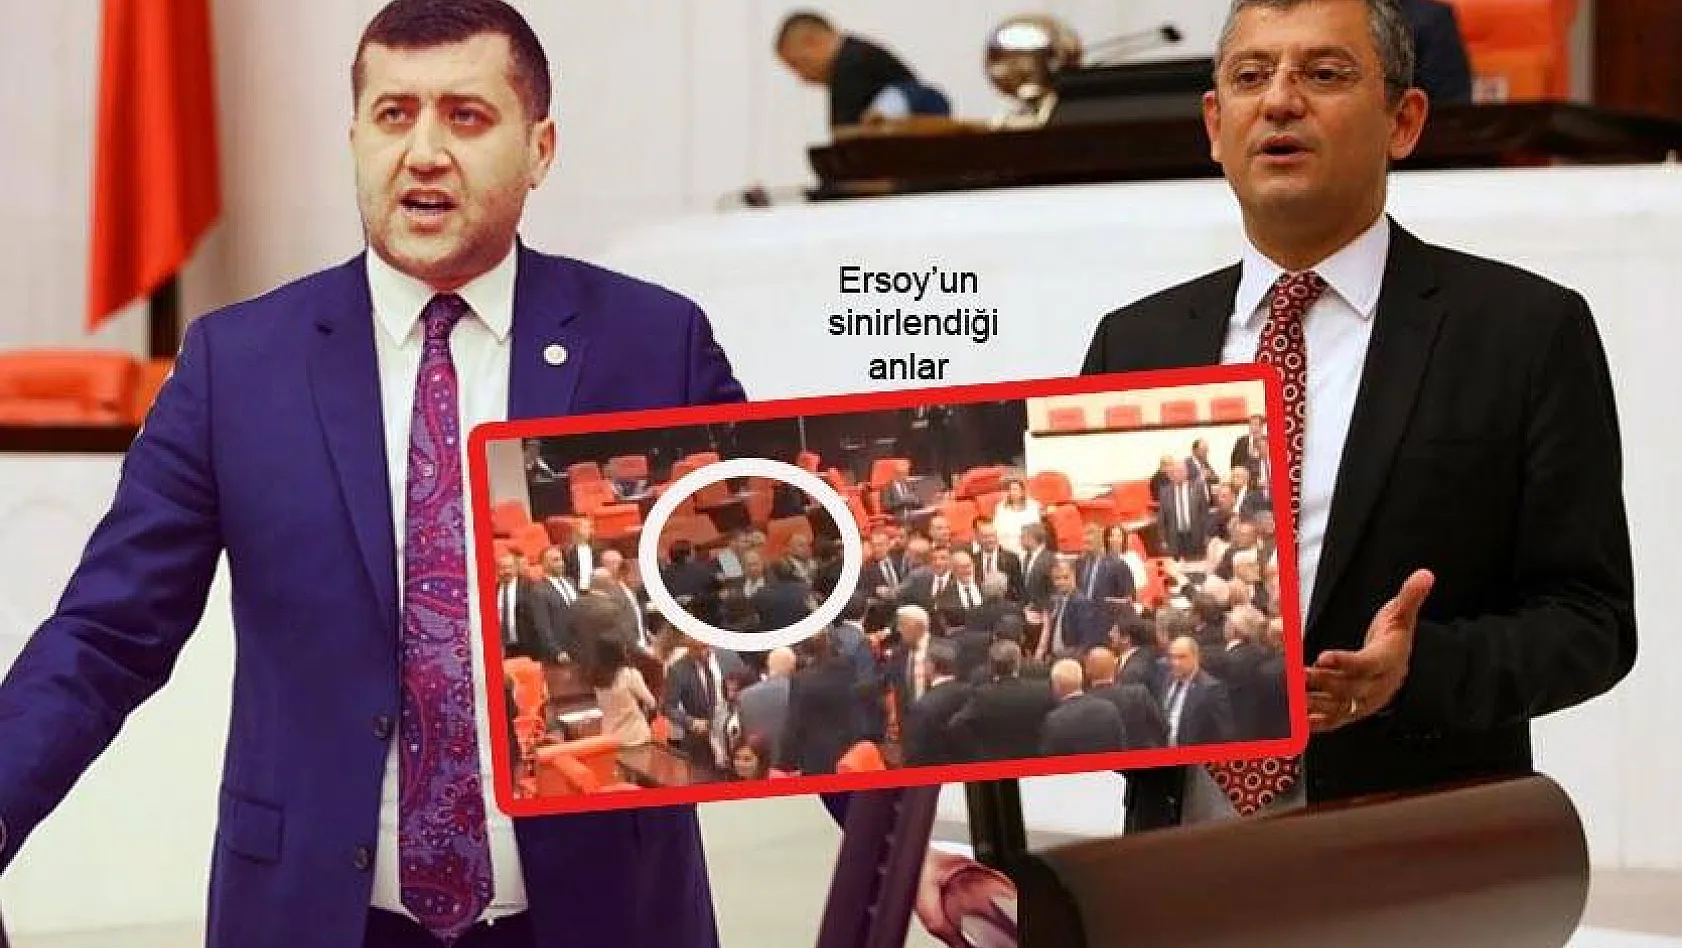 İşte Meclis'te MHP'li Ersoy ile CHP'li Özel arasındaki tartışmanın perde arkası